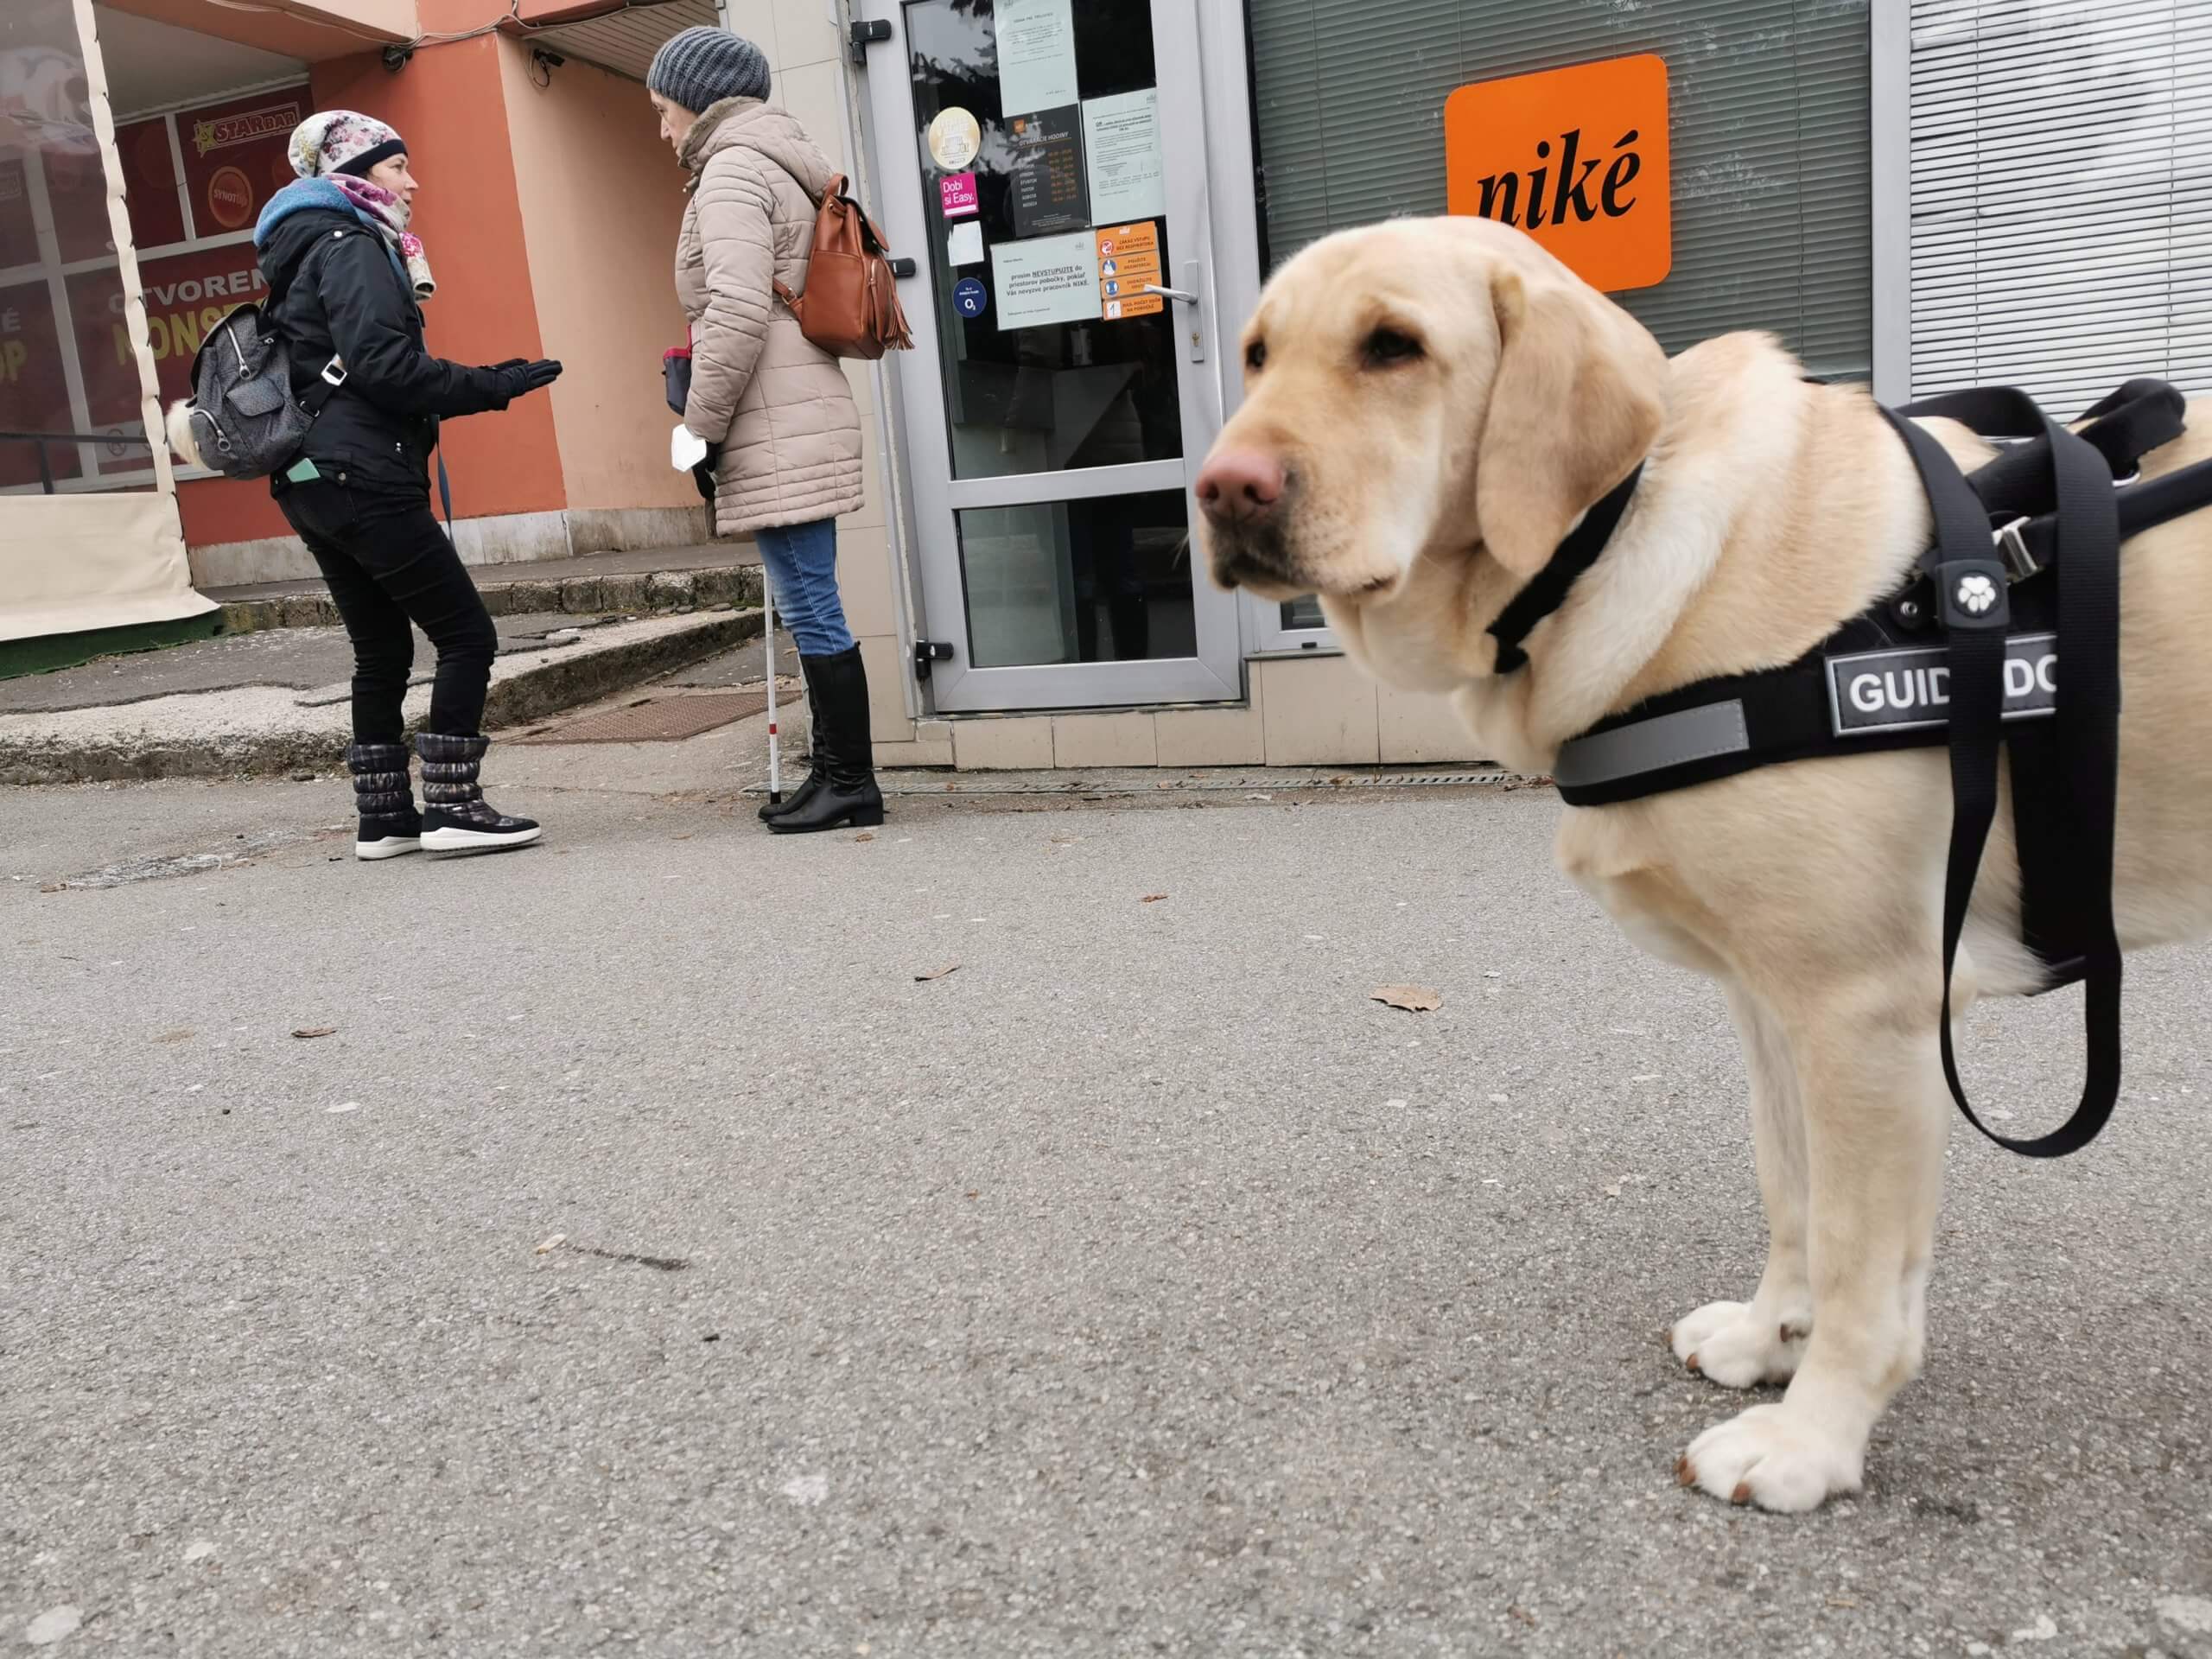 Vodiaci pes v postroji stojí na chodníku a pozerá do objektívu. V pozadí diskutujú cvičiteľka s klientkou o detailoch trasy do obchodu.